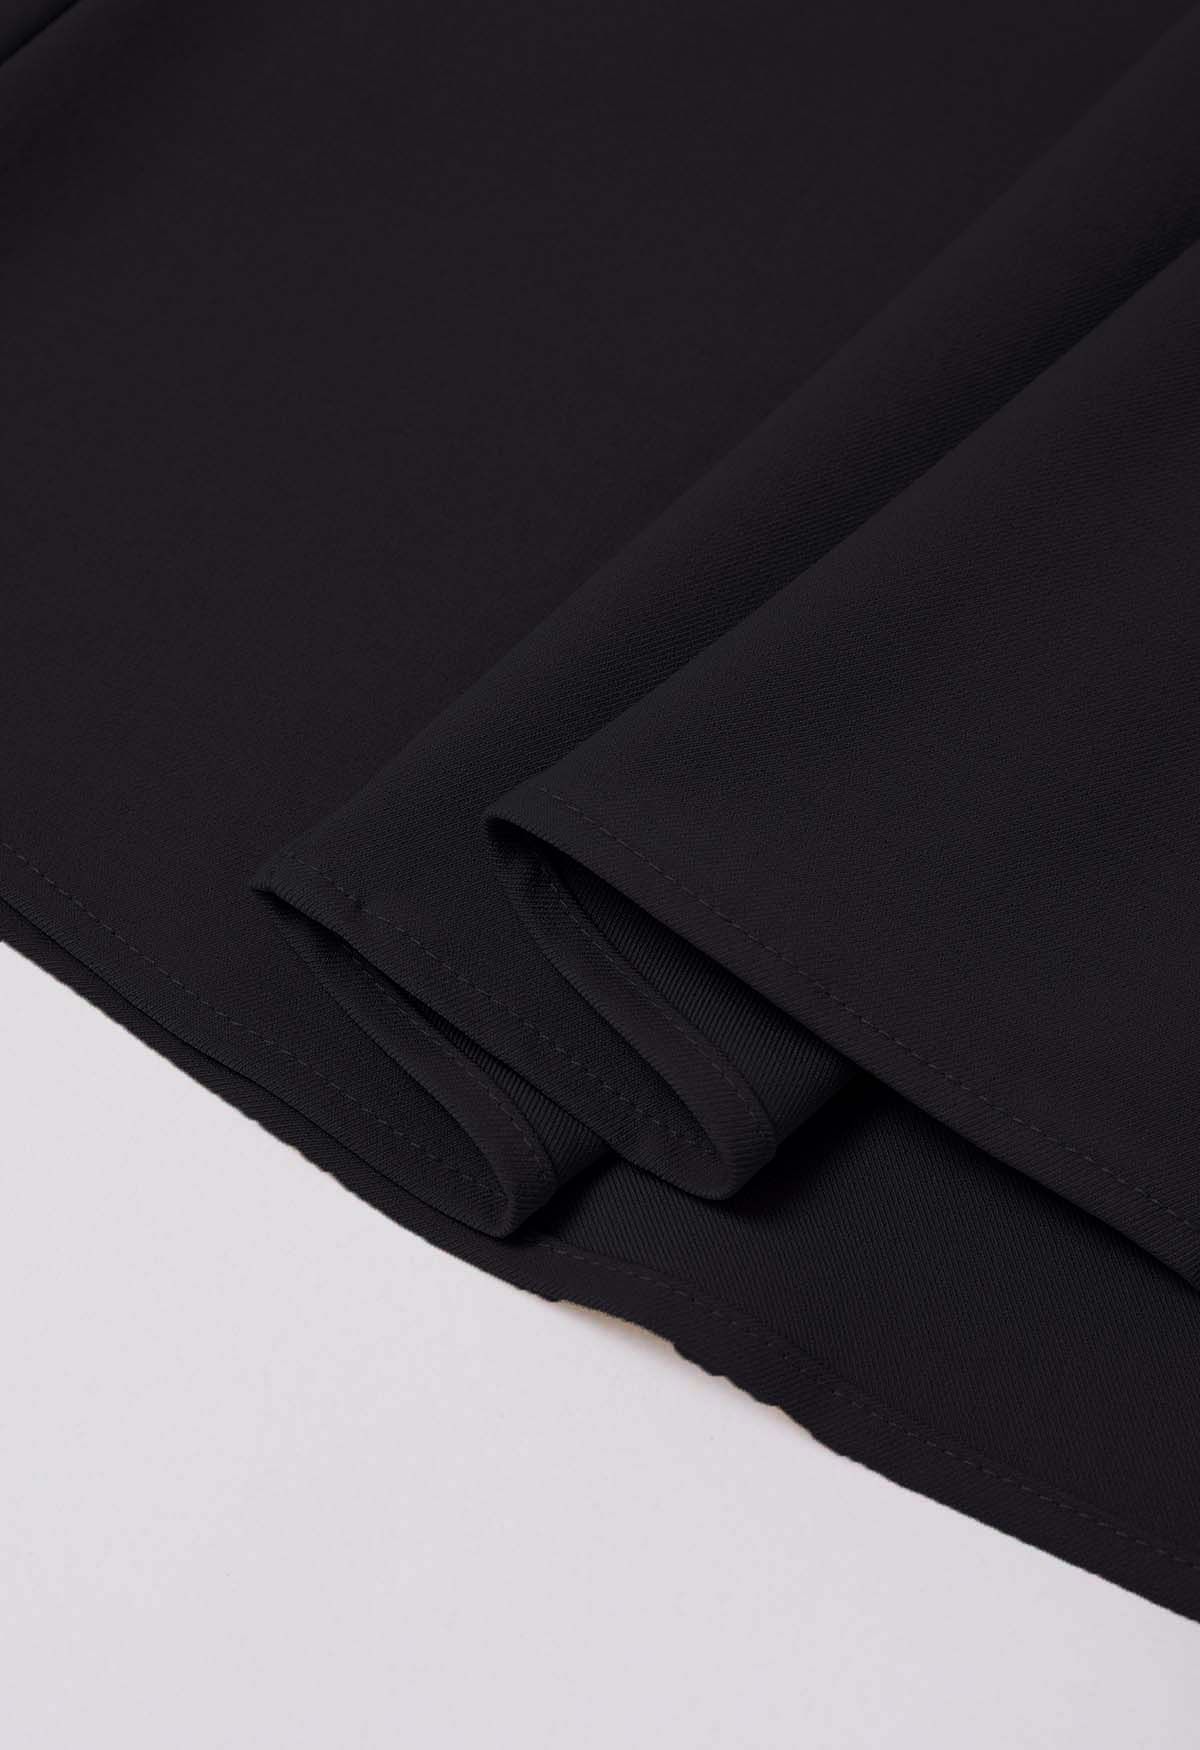 Falda midi plisada con cintura adornada con botones en negro